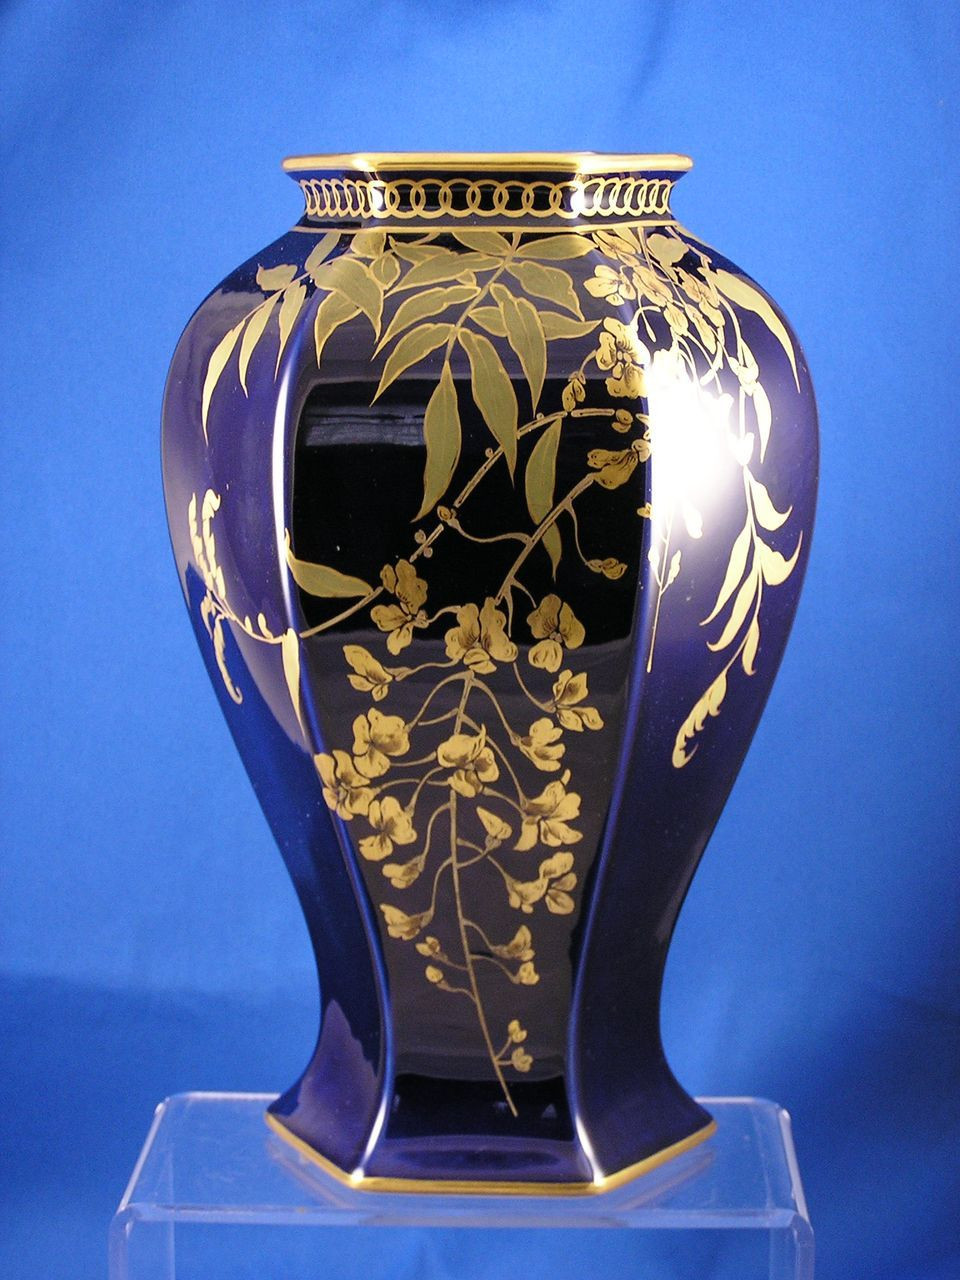 29 Elegant Limoges China Vase 2024 free download limoges china vase of bernardaud co b limoges art deco wisteria motif vase c 1914 pertaining to b limoges art deco wisteria motif vase c 1914 1930